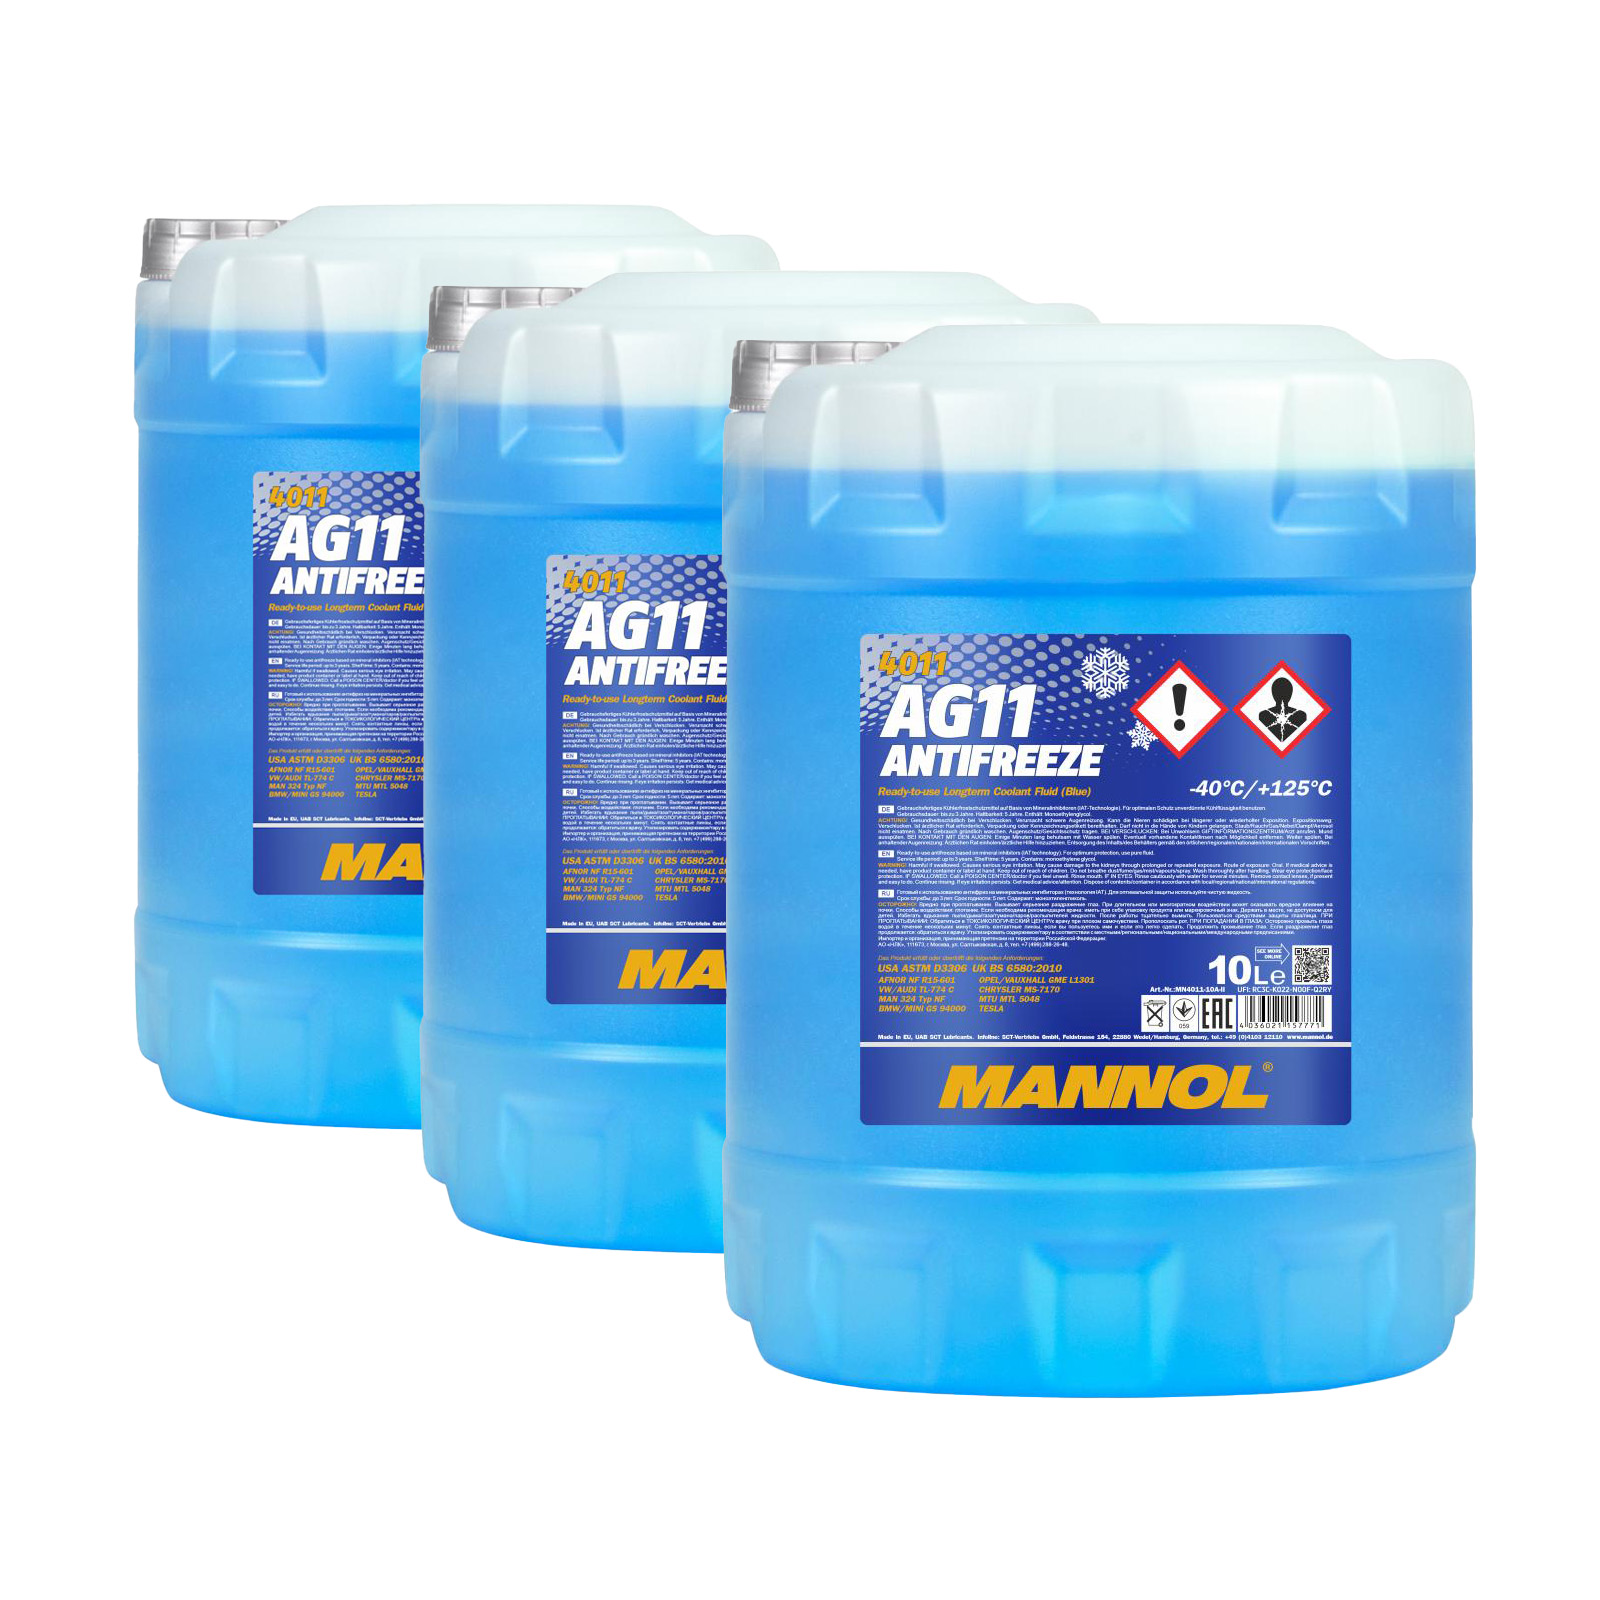 30 Liter (3x10) MANNOL Antifreeze AG11 Fertiggemisch blau -40°C Kühlerfrostschutz